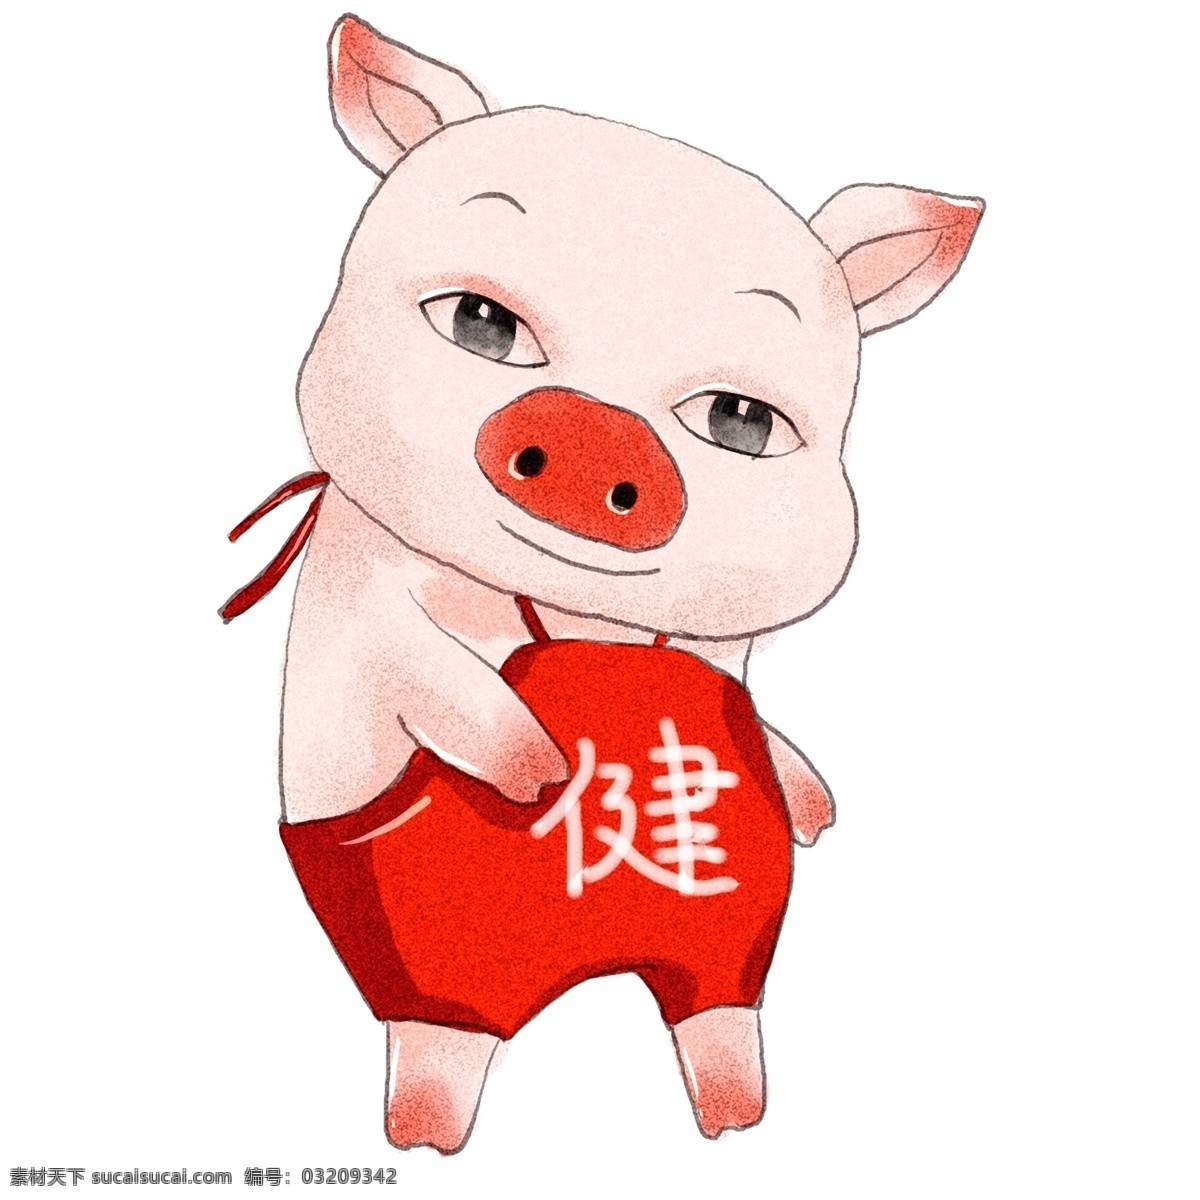 2019 年 生肖 猪 猪年 健康 原创 商用 元素 可爱 生肖猪 手绘 板绘 水彩